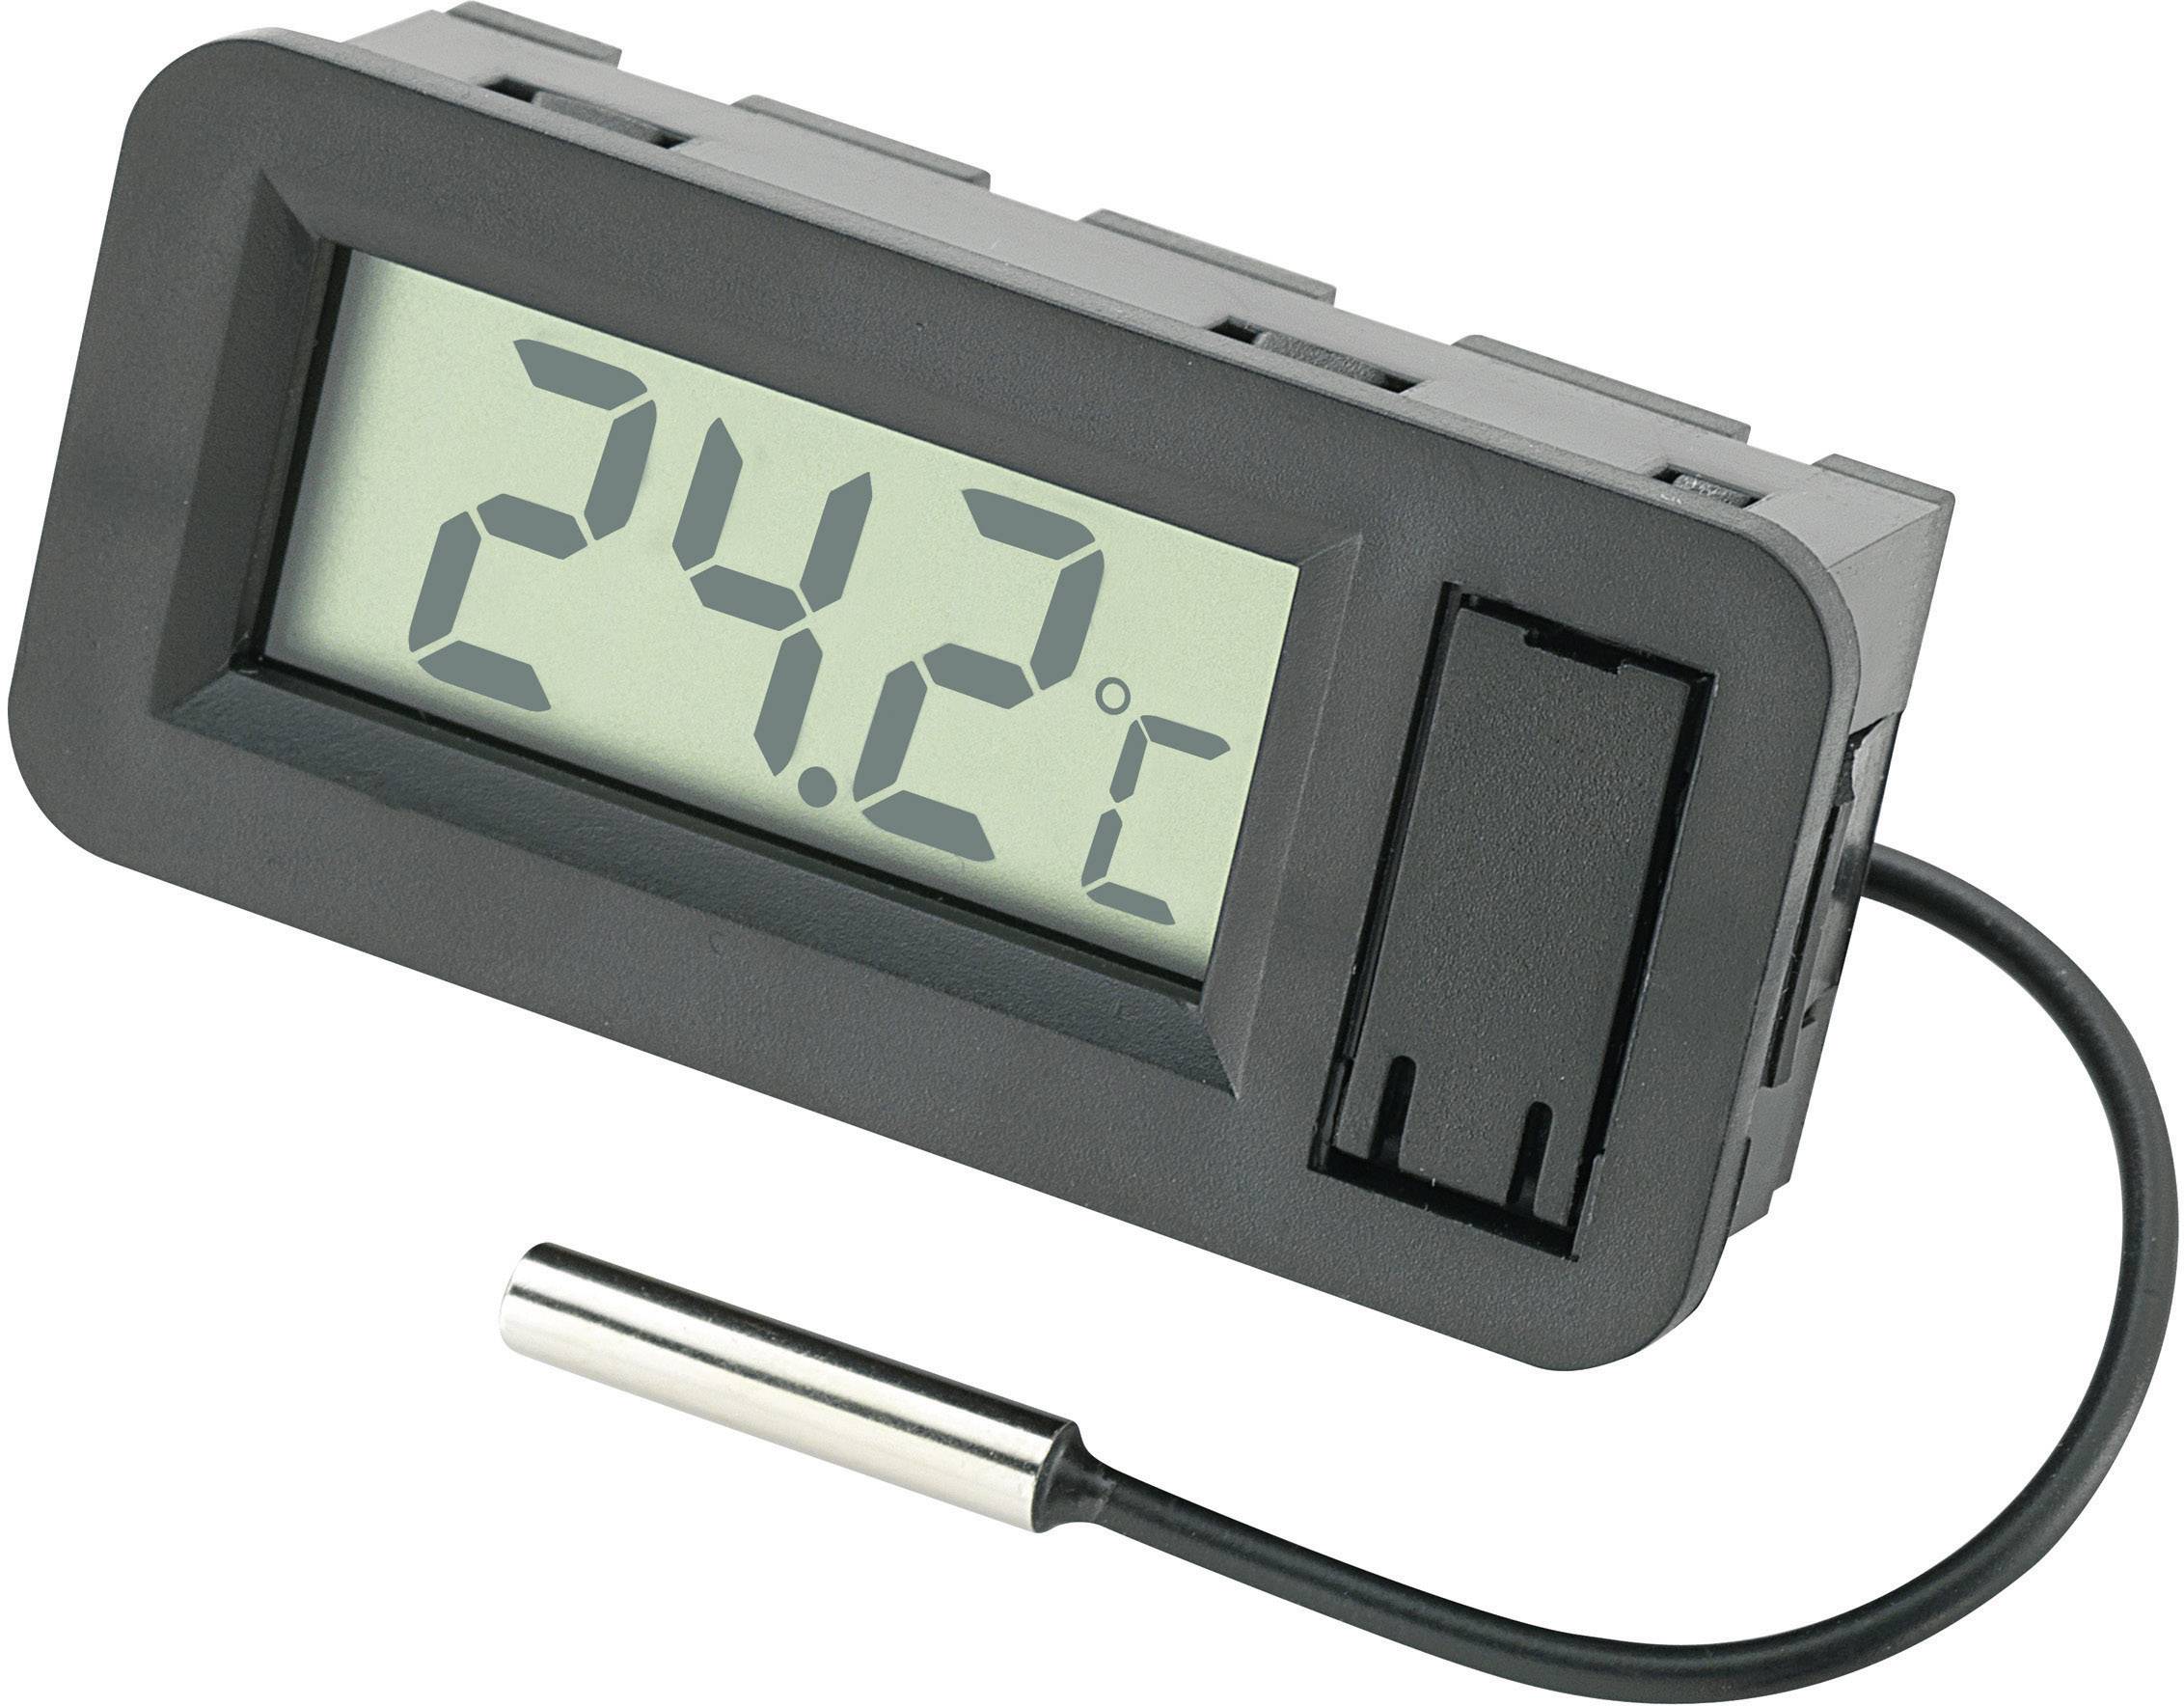 CONRAD Basetech BT-80 LCD-Temperatur Anzeigen-Modul BT-80 -50 bis +70 °C Einbaumaße 56.5 x 25.5 mm